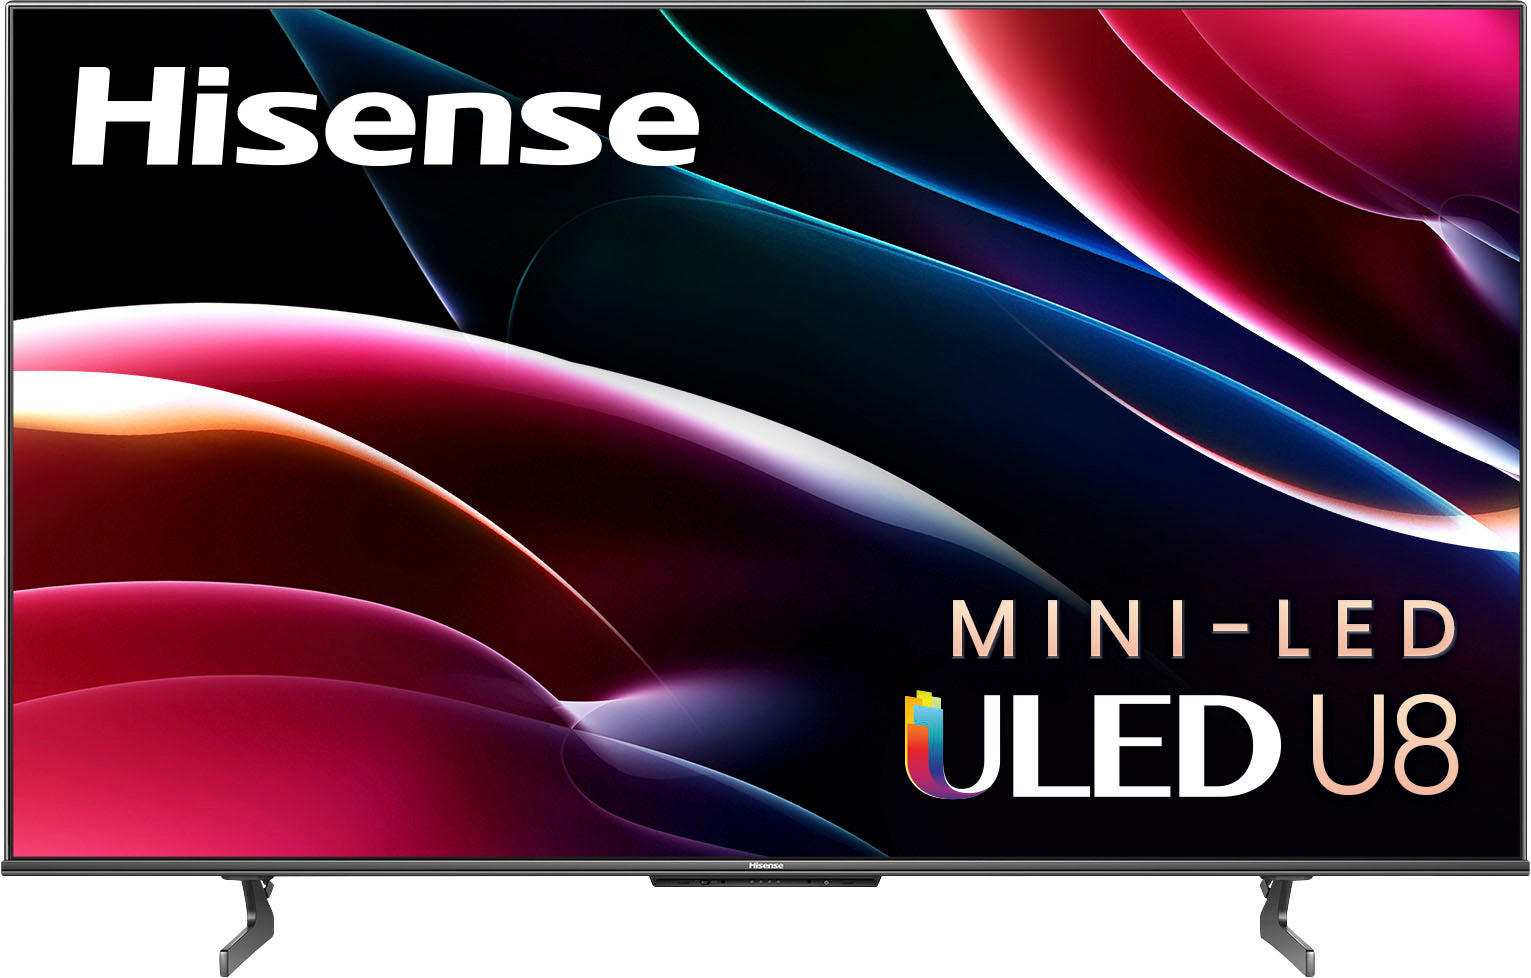 Hisense 75U8H 75" 8 Series Quantum ULED 4K UHD Smart Google TV